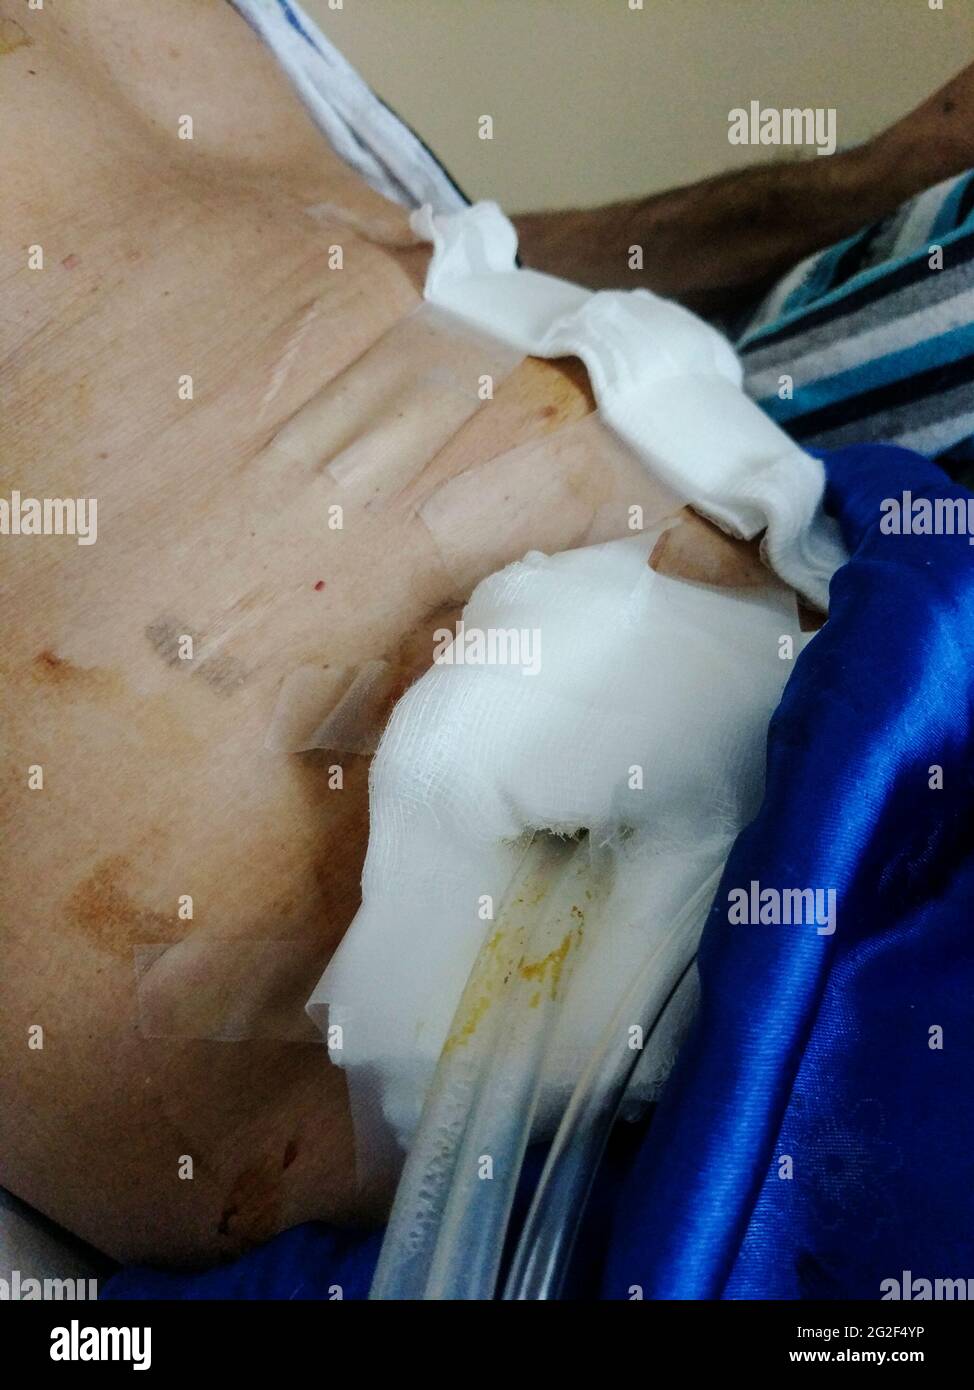 Uomo dopo la chirurgia del cancro colorettale, il torace di drenaggio del torace pneumotorace collegato a un flacone riempito di liquido e ad altri tubi di drenaggio Foto Stock